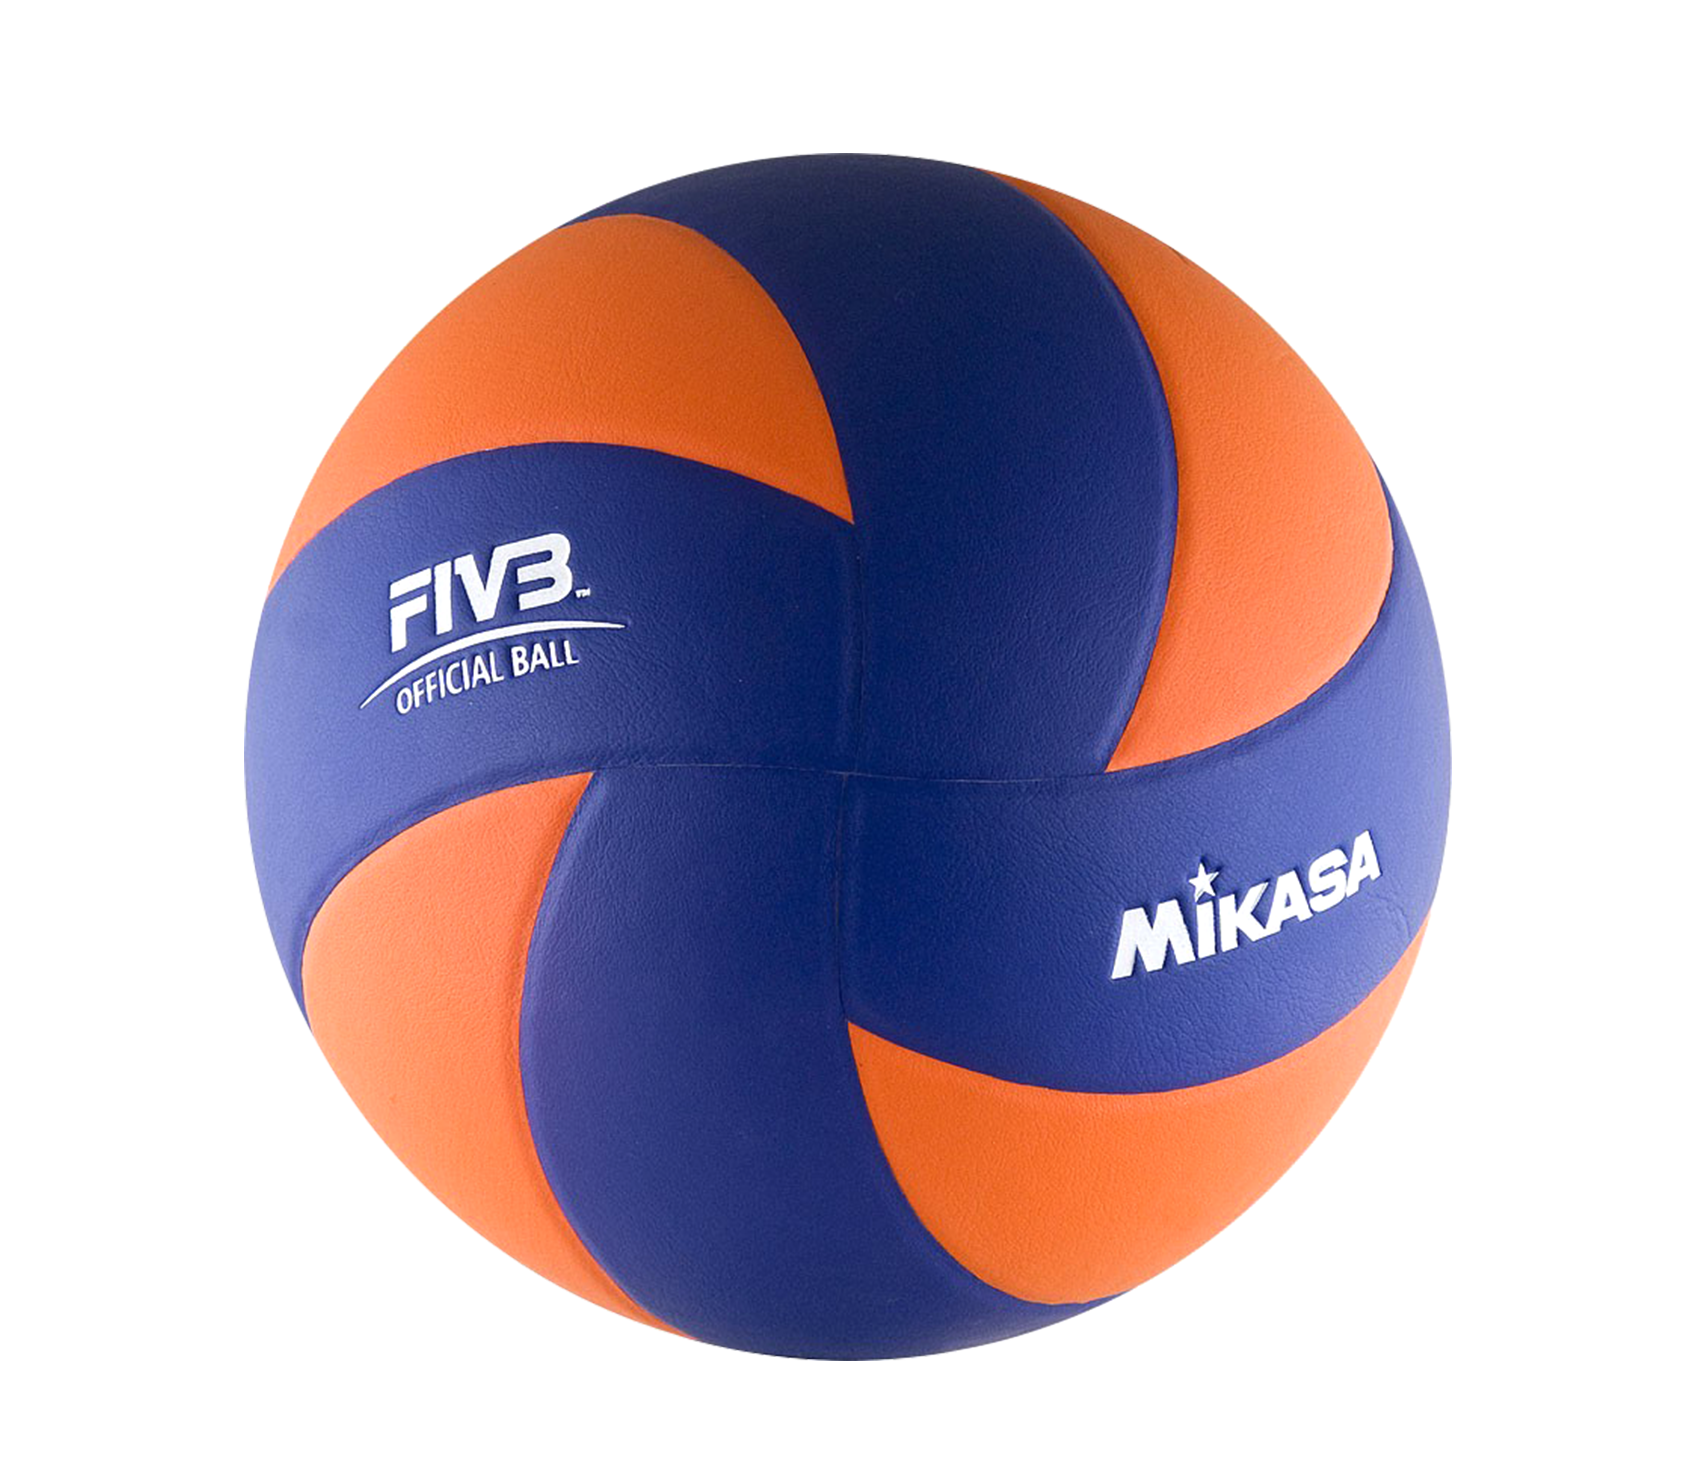 Как выглядит волейбольный мяч фото